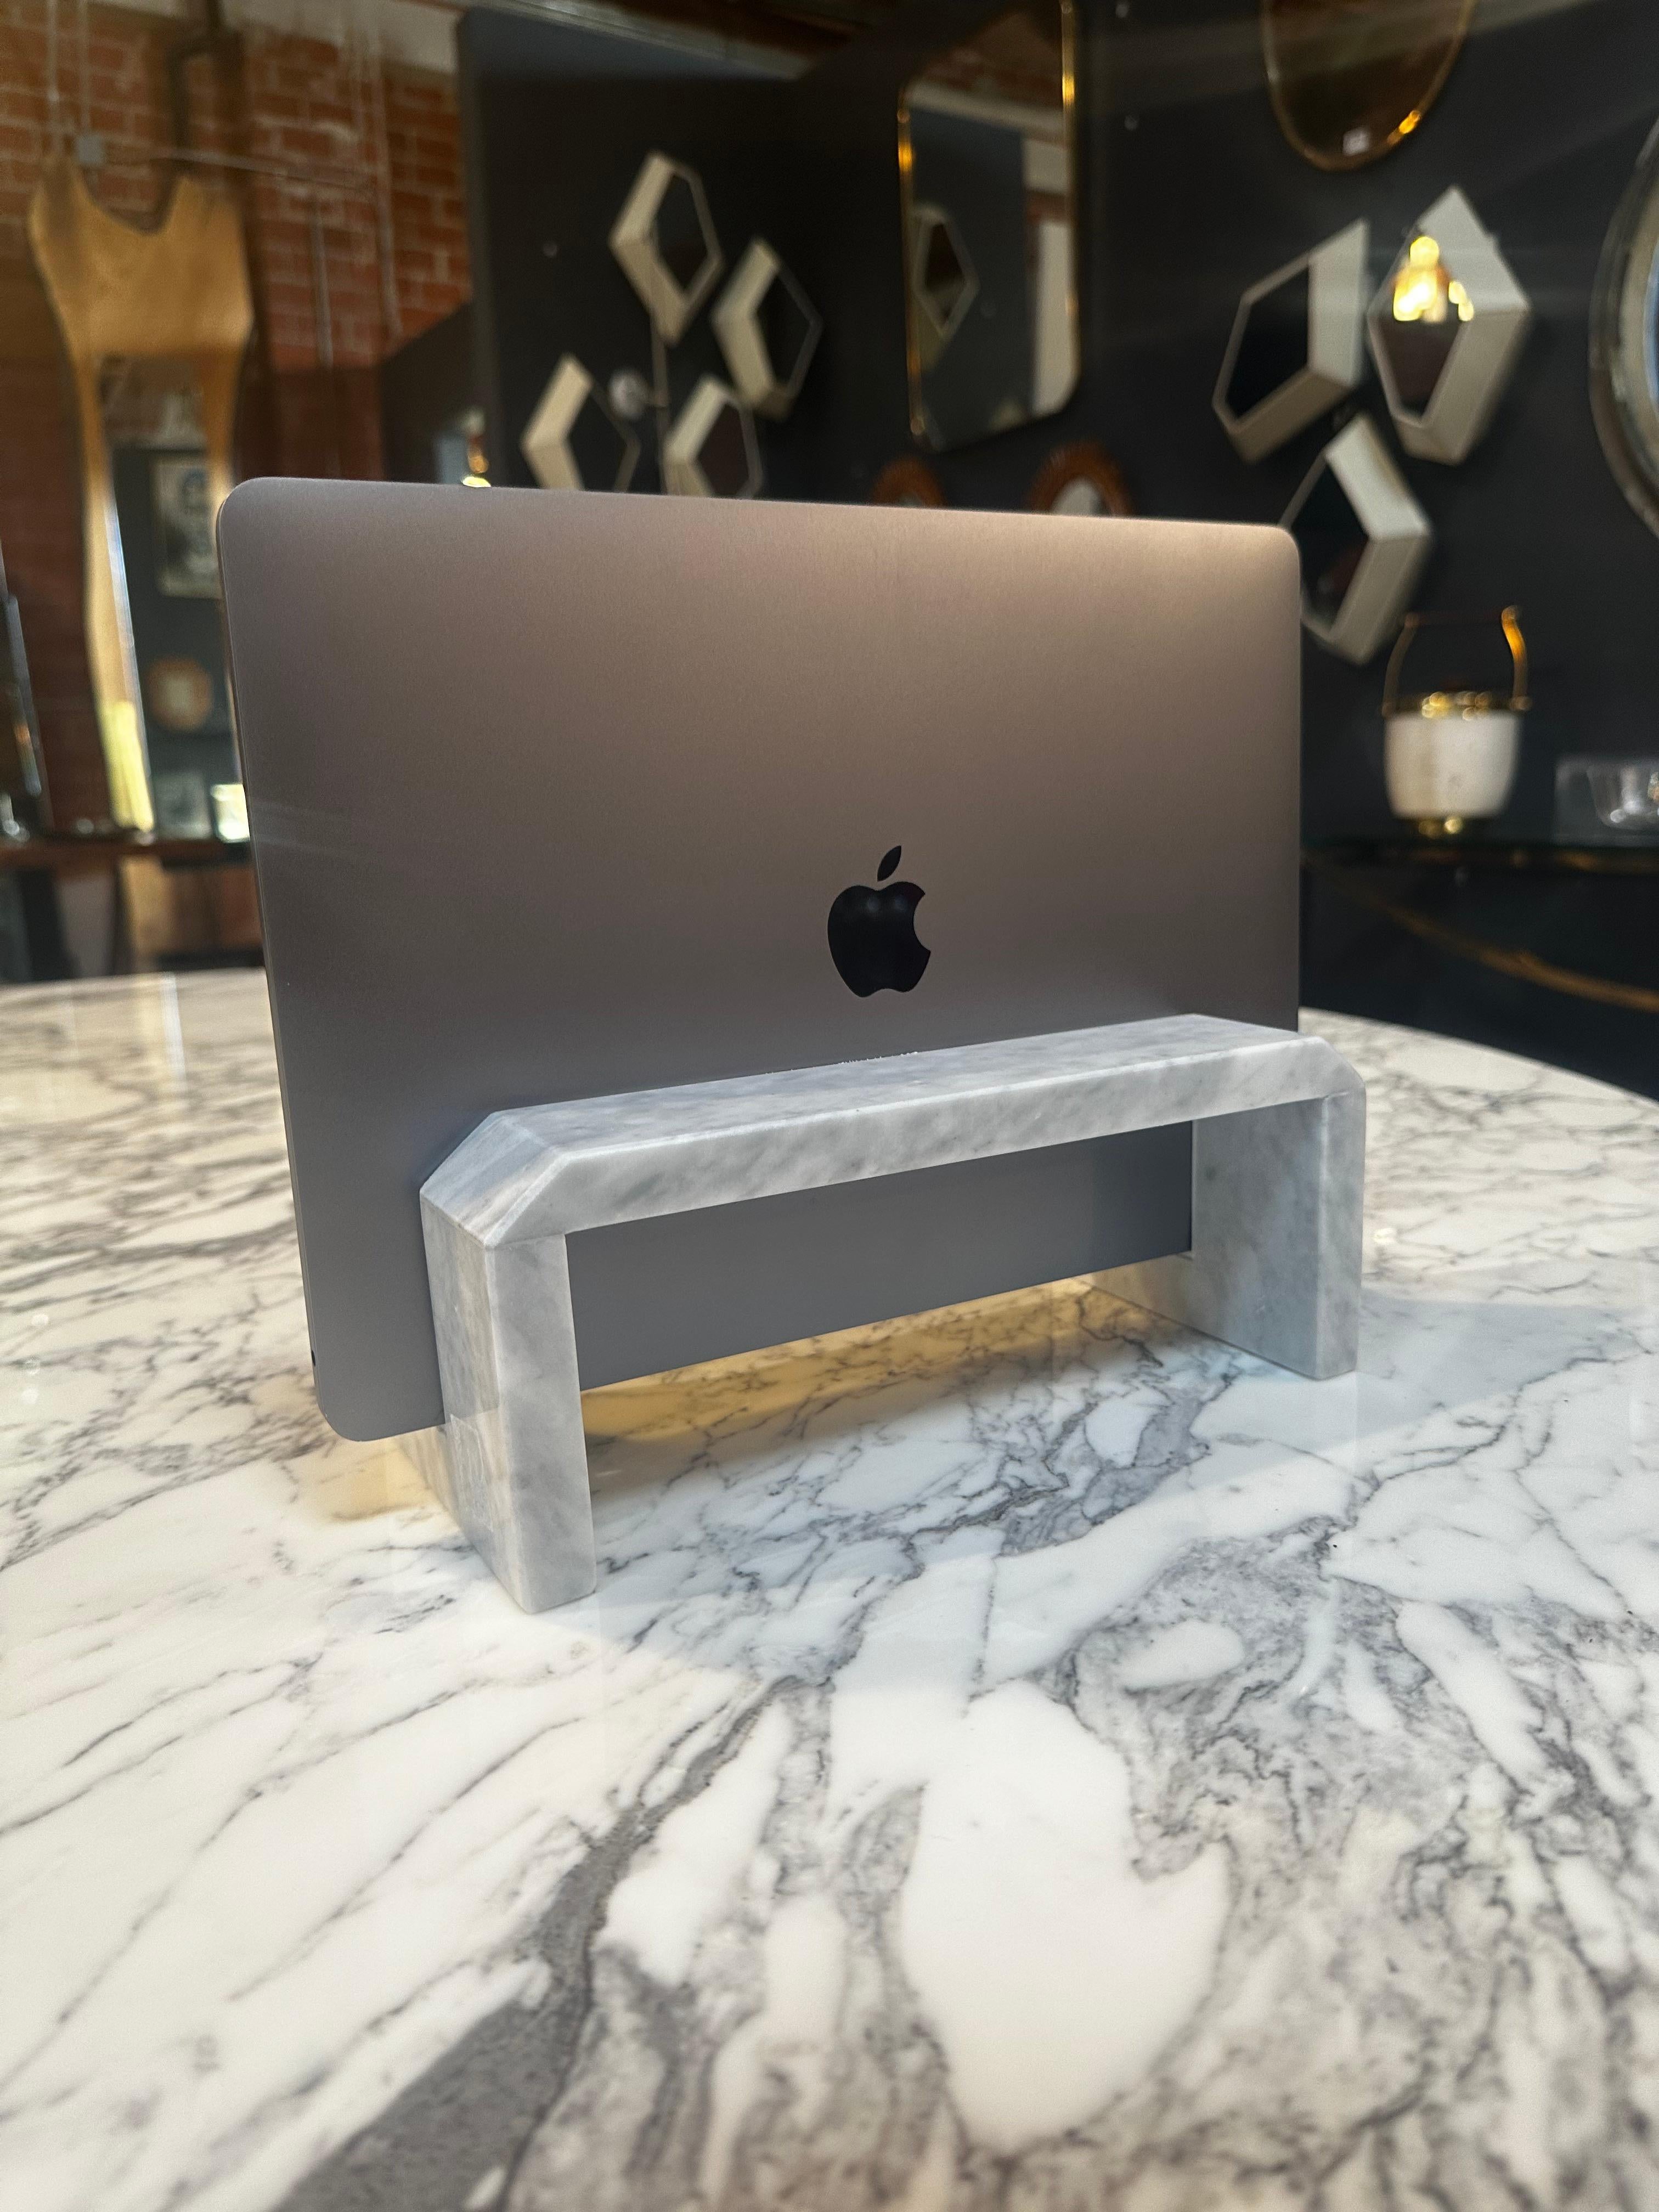 La pierre de lave Règo est un petit bijou qui ajoute une nouvelle expérience à l'utilisation d'un ordinateur portable combiné à un écran externe, idéal pour économiser de l'espace et créer un environnement propre et ordonné sur le bureau. Ce support